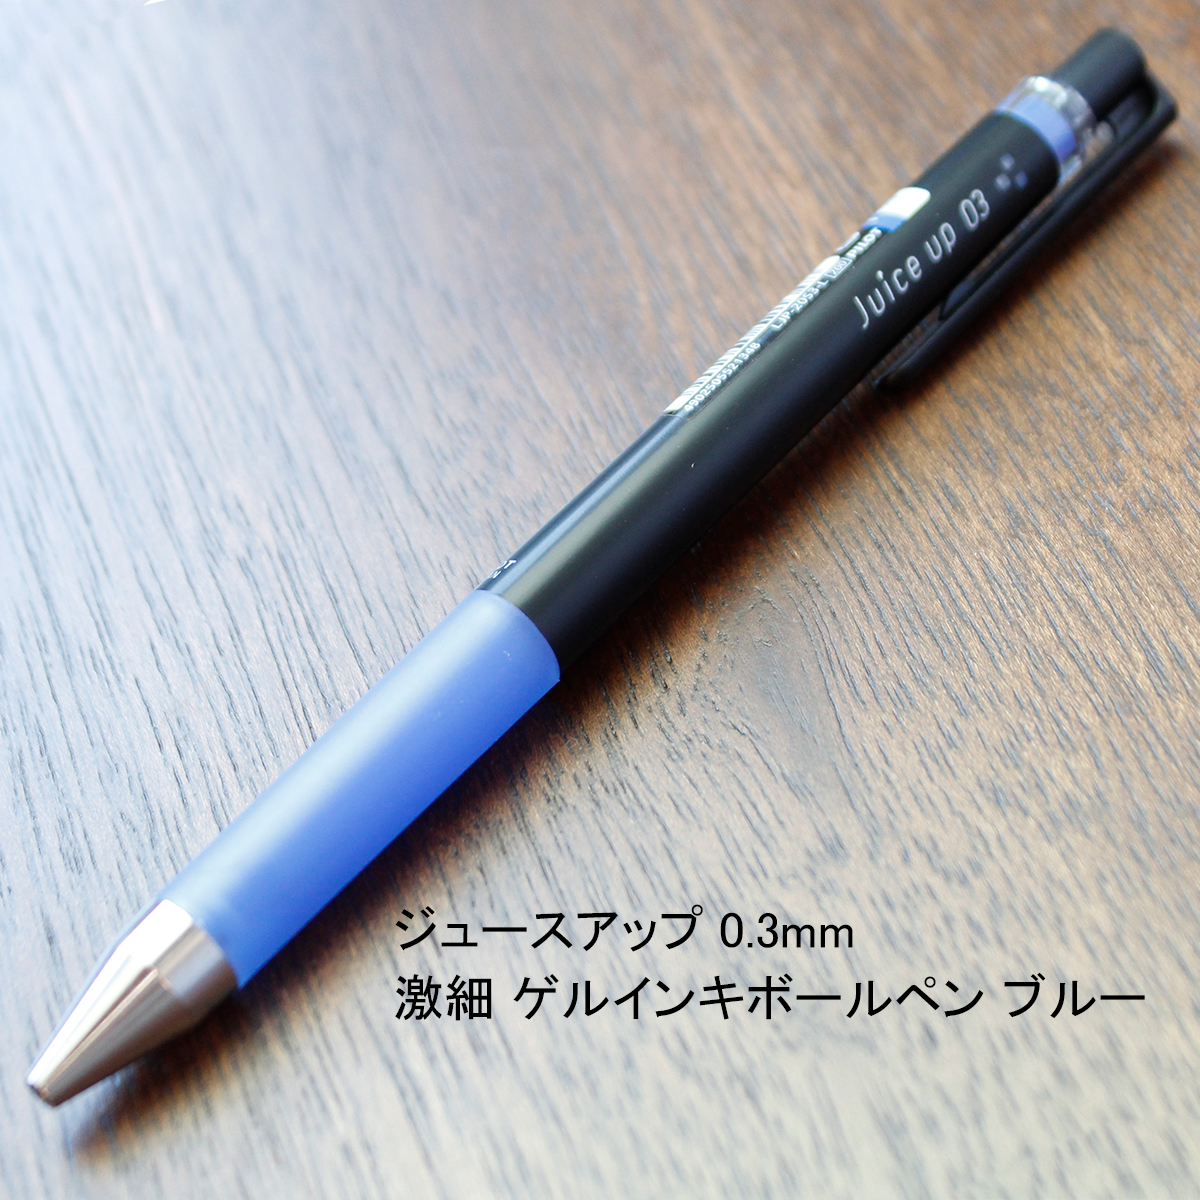 ペン先が強く書き出しが良いジュースアップ 0.3mm 激細 ゲルインキボールペン ブルー LJP-20S3-L【筆記用具通販サイト】  ブングショップドットコム